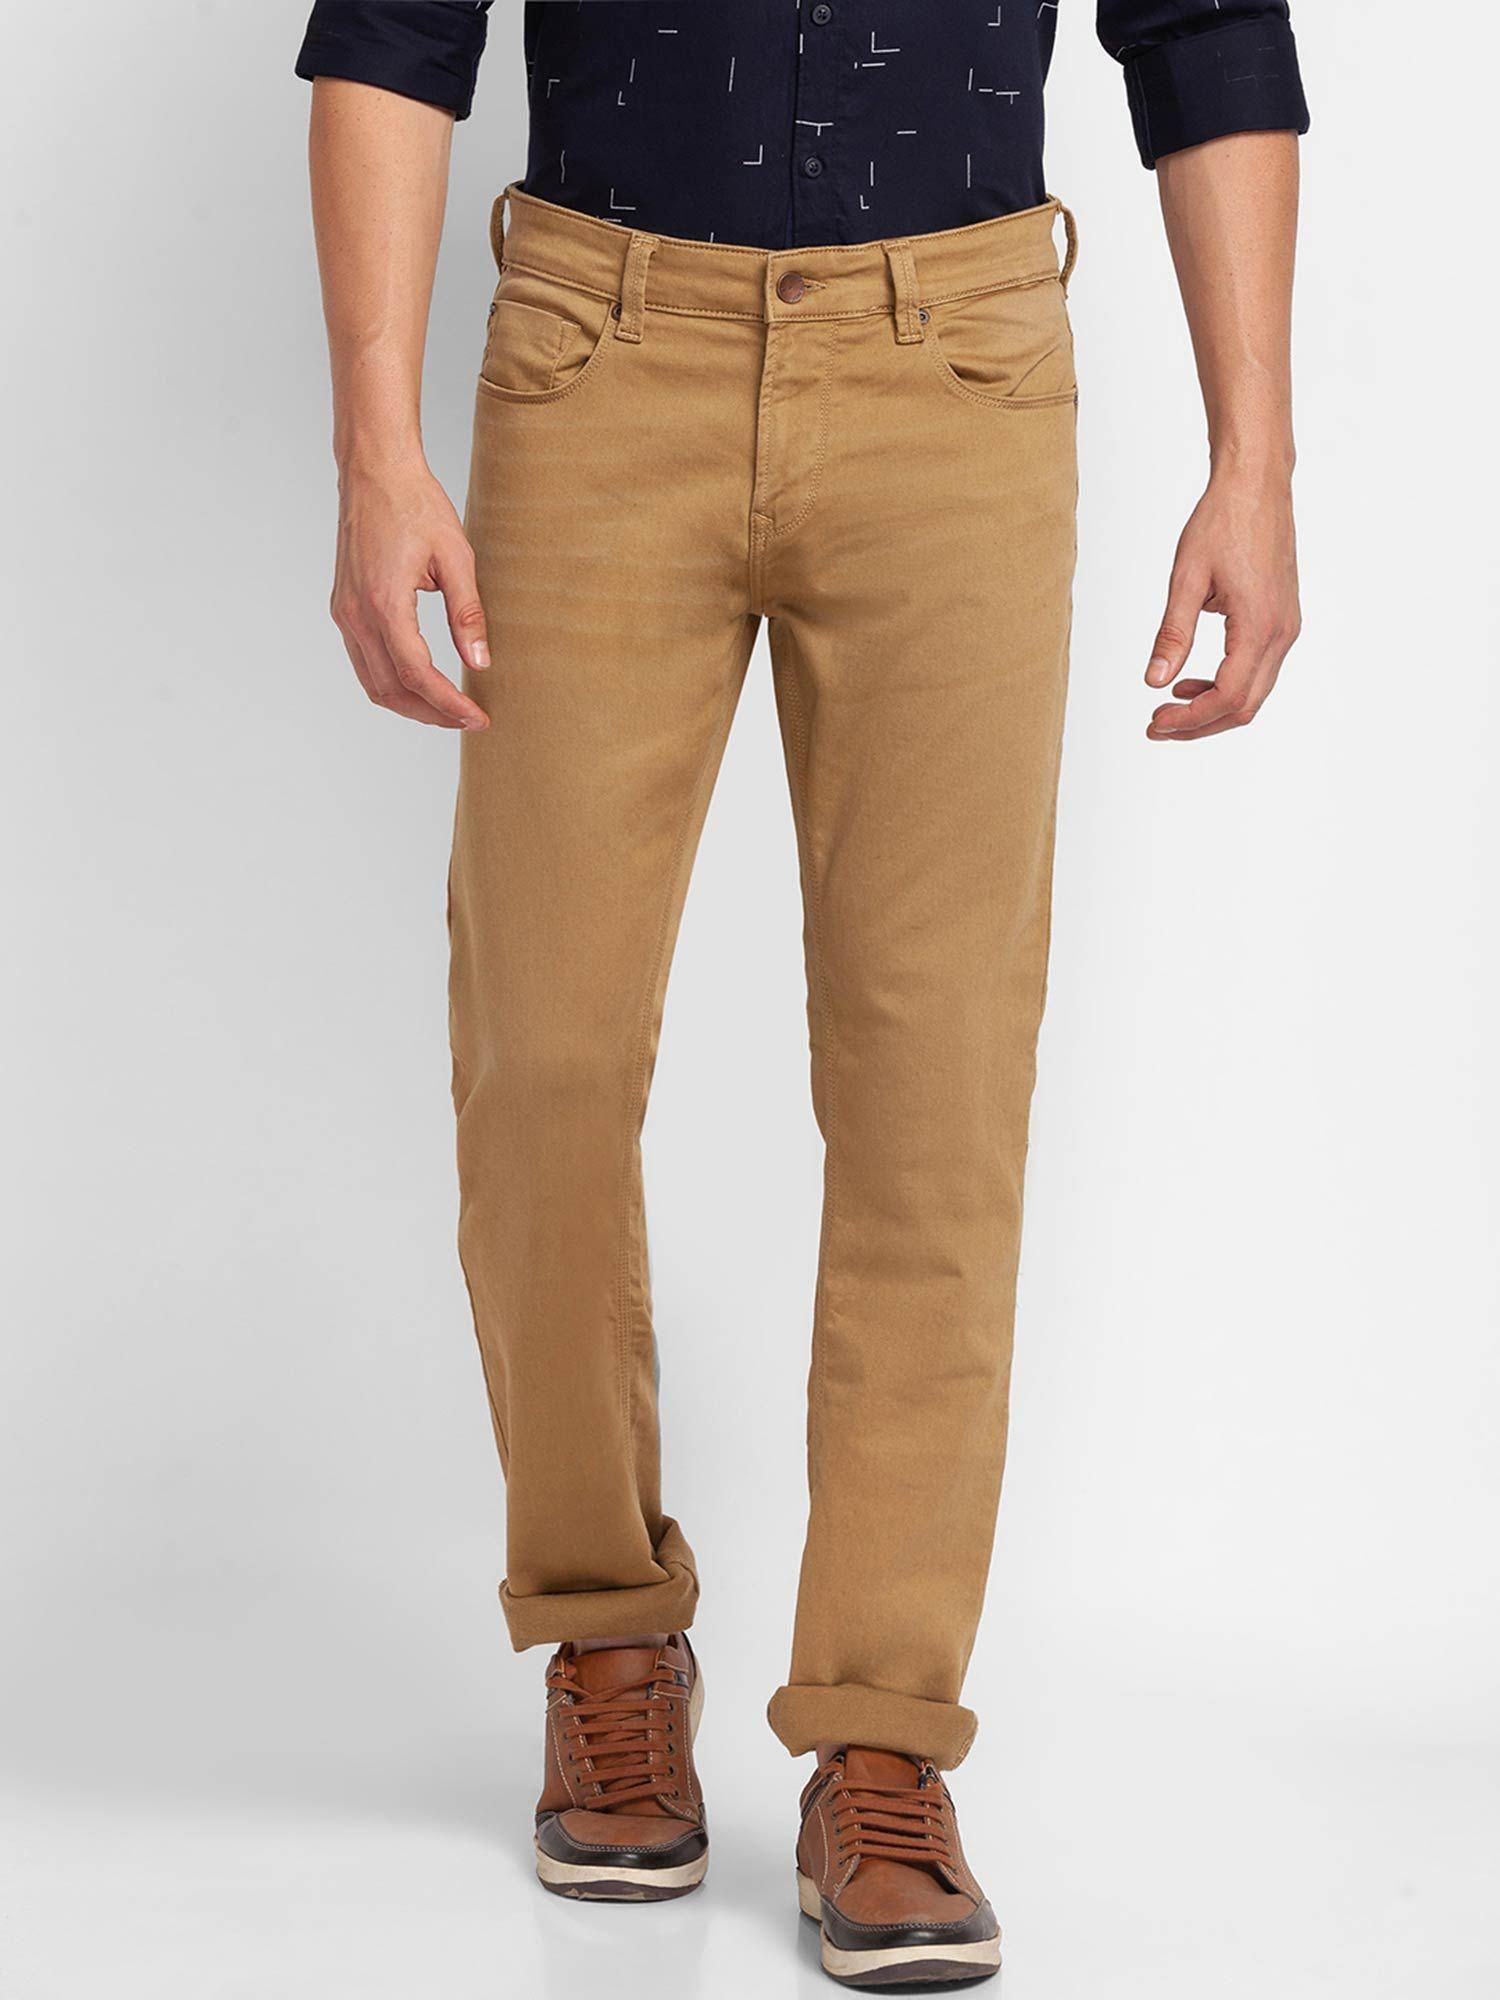 dark khaki cotton comfort fit straight length jeans for men (ricardo)